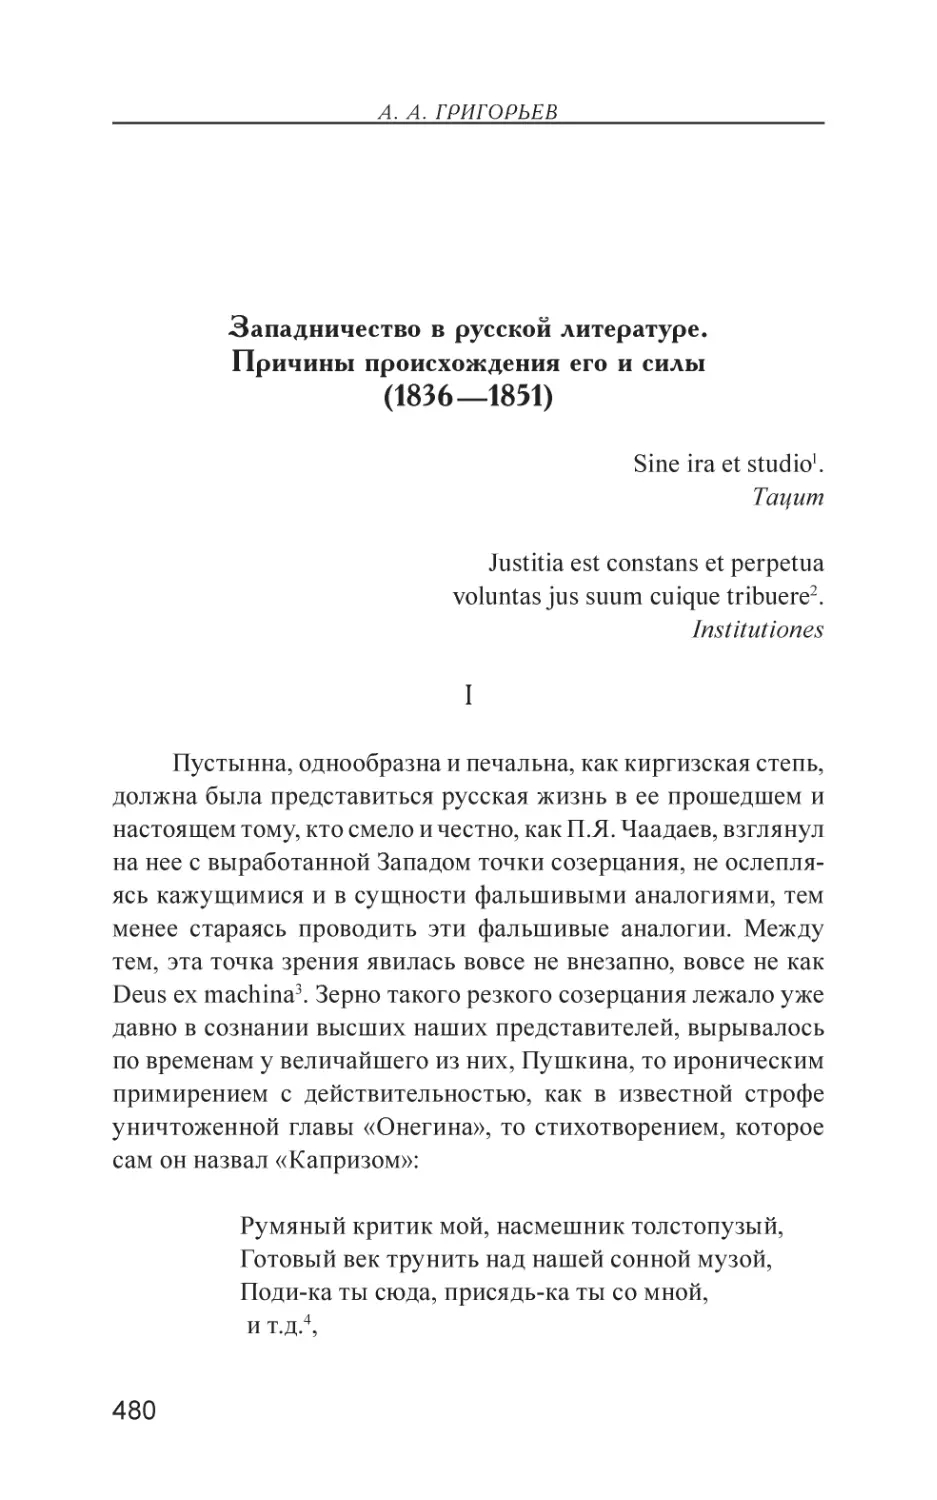 Западничество в русской литературе. Причины происхождения его и силы (1836—1851)